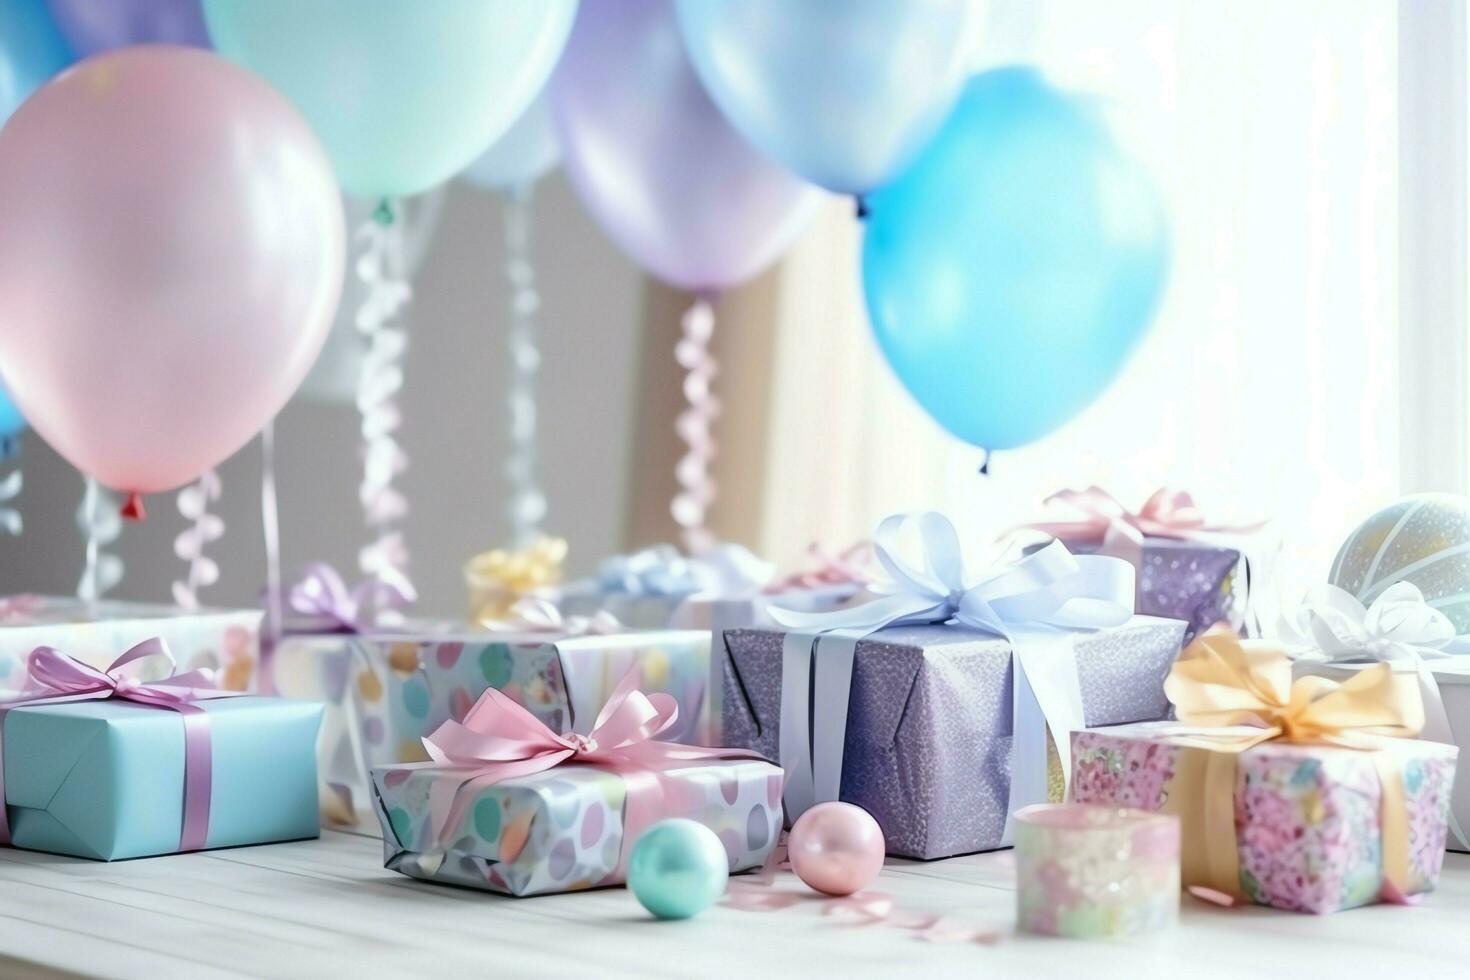 festivo aniversário festa decorações em mesa com bolo, presente caixas e balões em pastel cor conceito de ai gerado foto